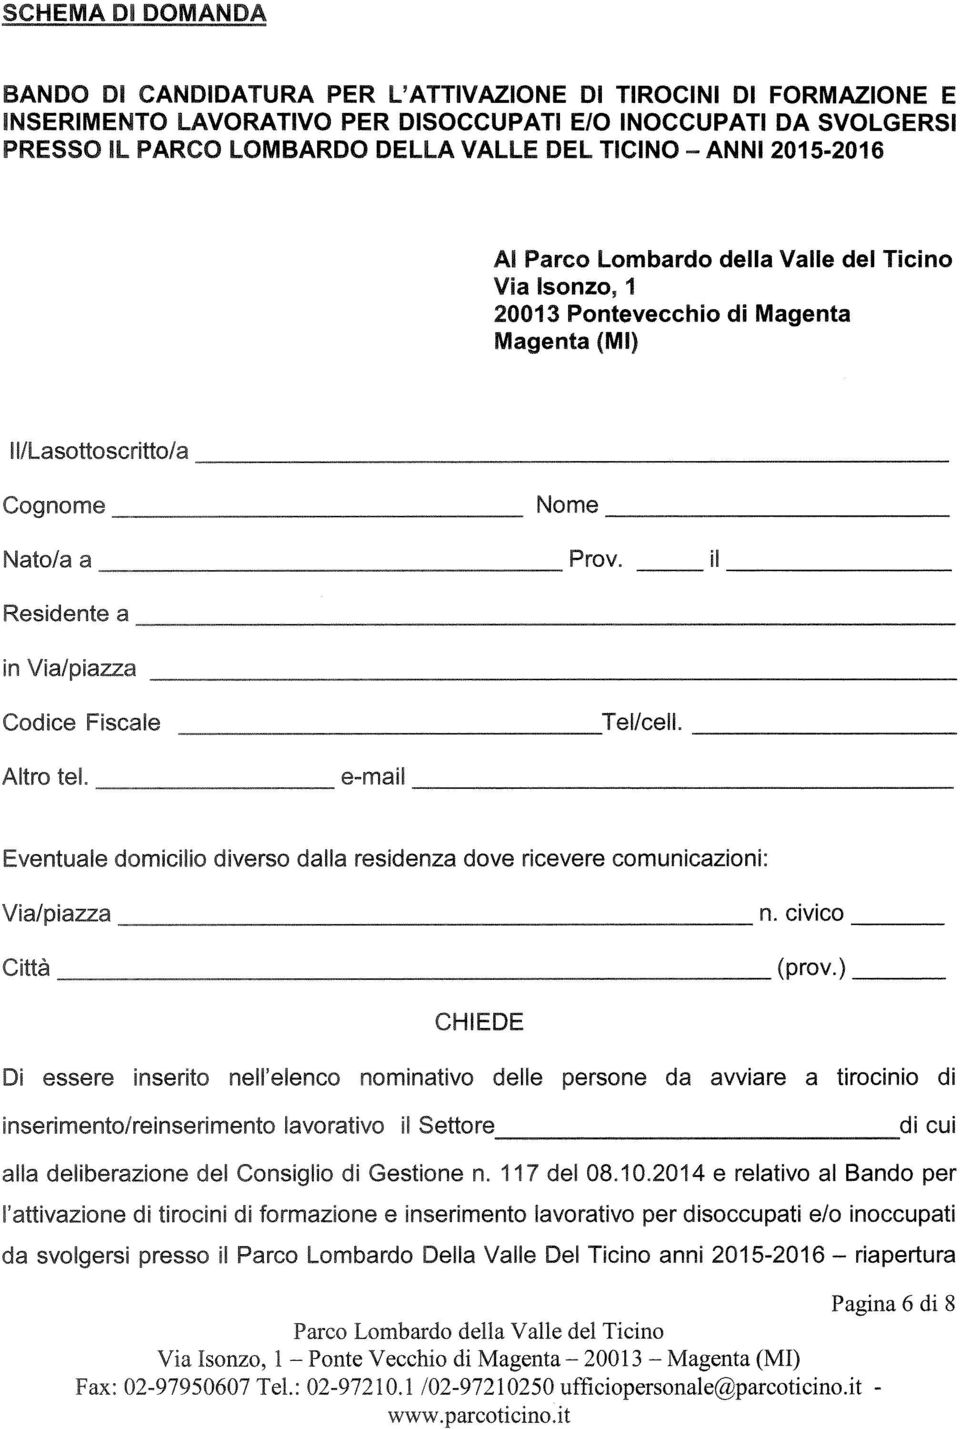 DELLA VALLE DEL TICINO ANNI 2015-2016 Al Via Isonzo, I 20013 Pontevecchio di Magenta Magenta (MI) 1/Lasottoscritto/a Cognome Nato/a a Nome Prov, Residente a in Via/piazza Codice Fiscale e-mail